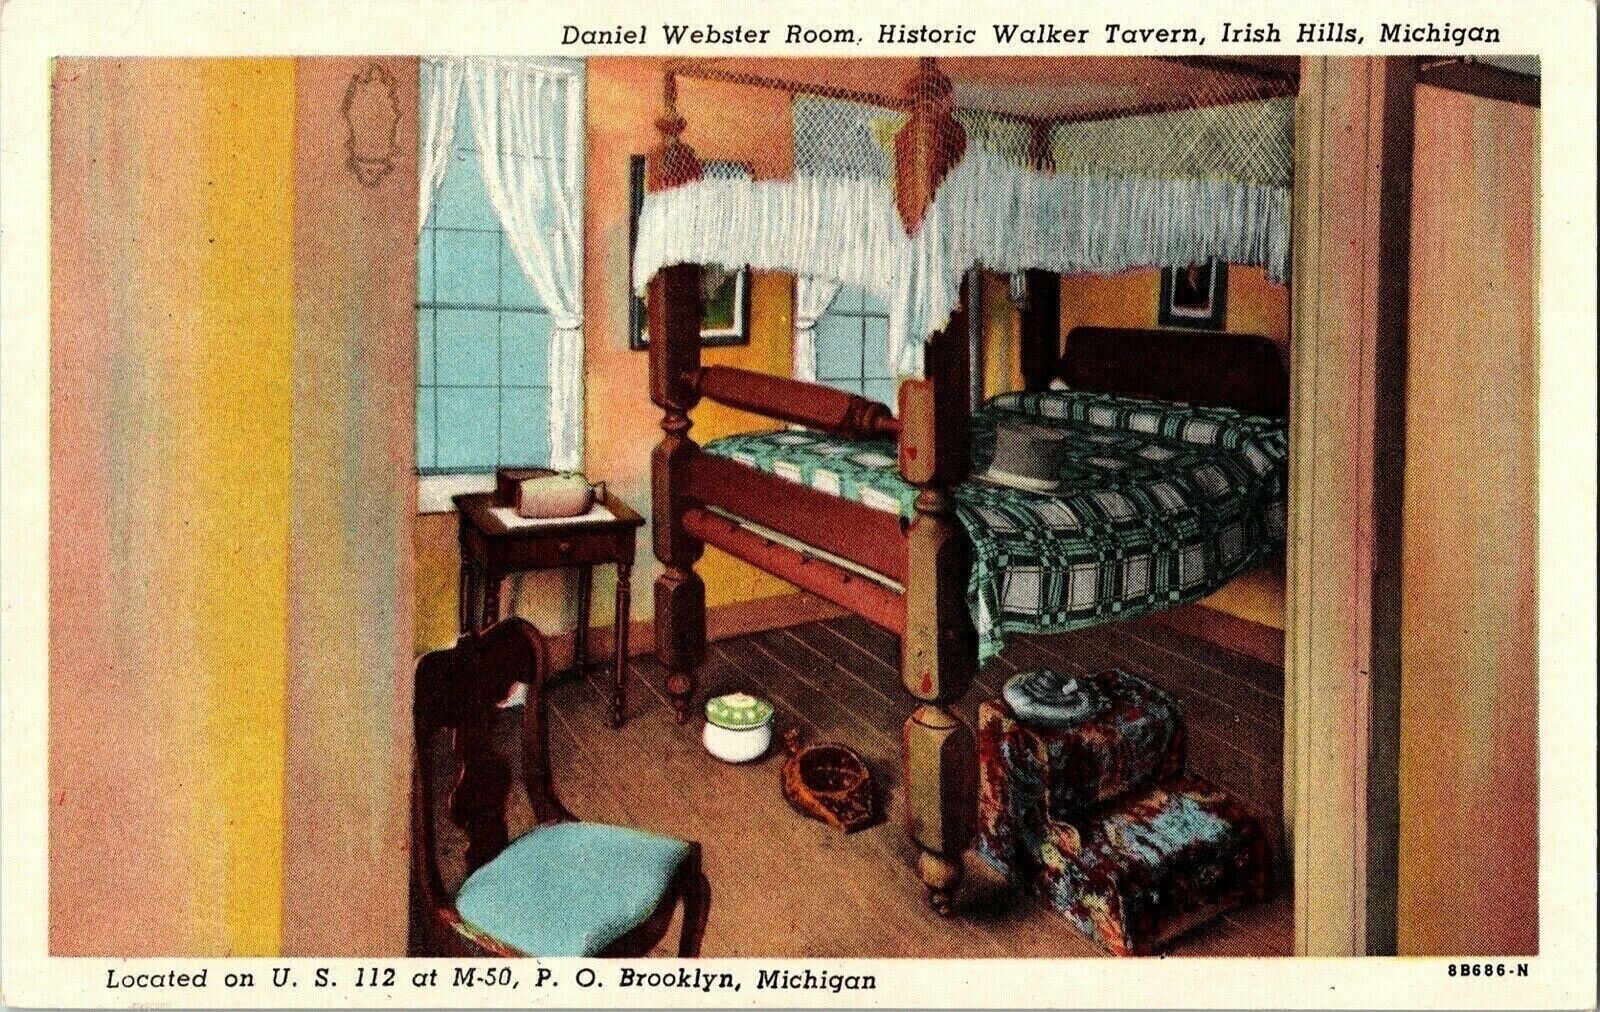 US 112 M-50 Brooklyn MI Daniel Webster Room Walker Tavern Irish Hills Postcard